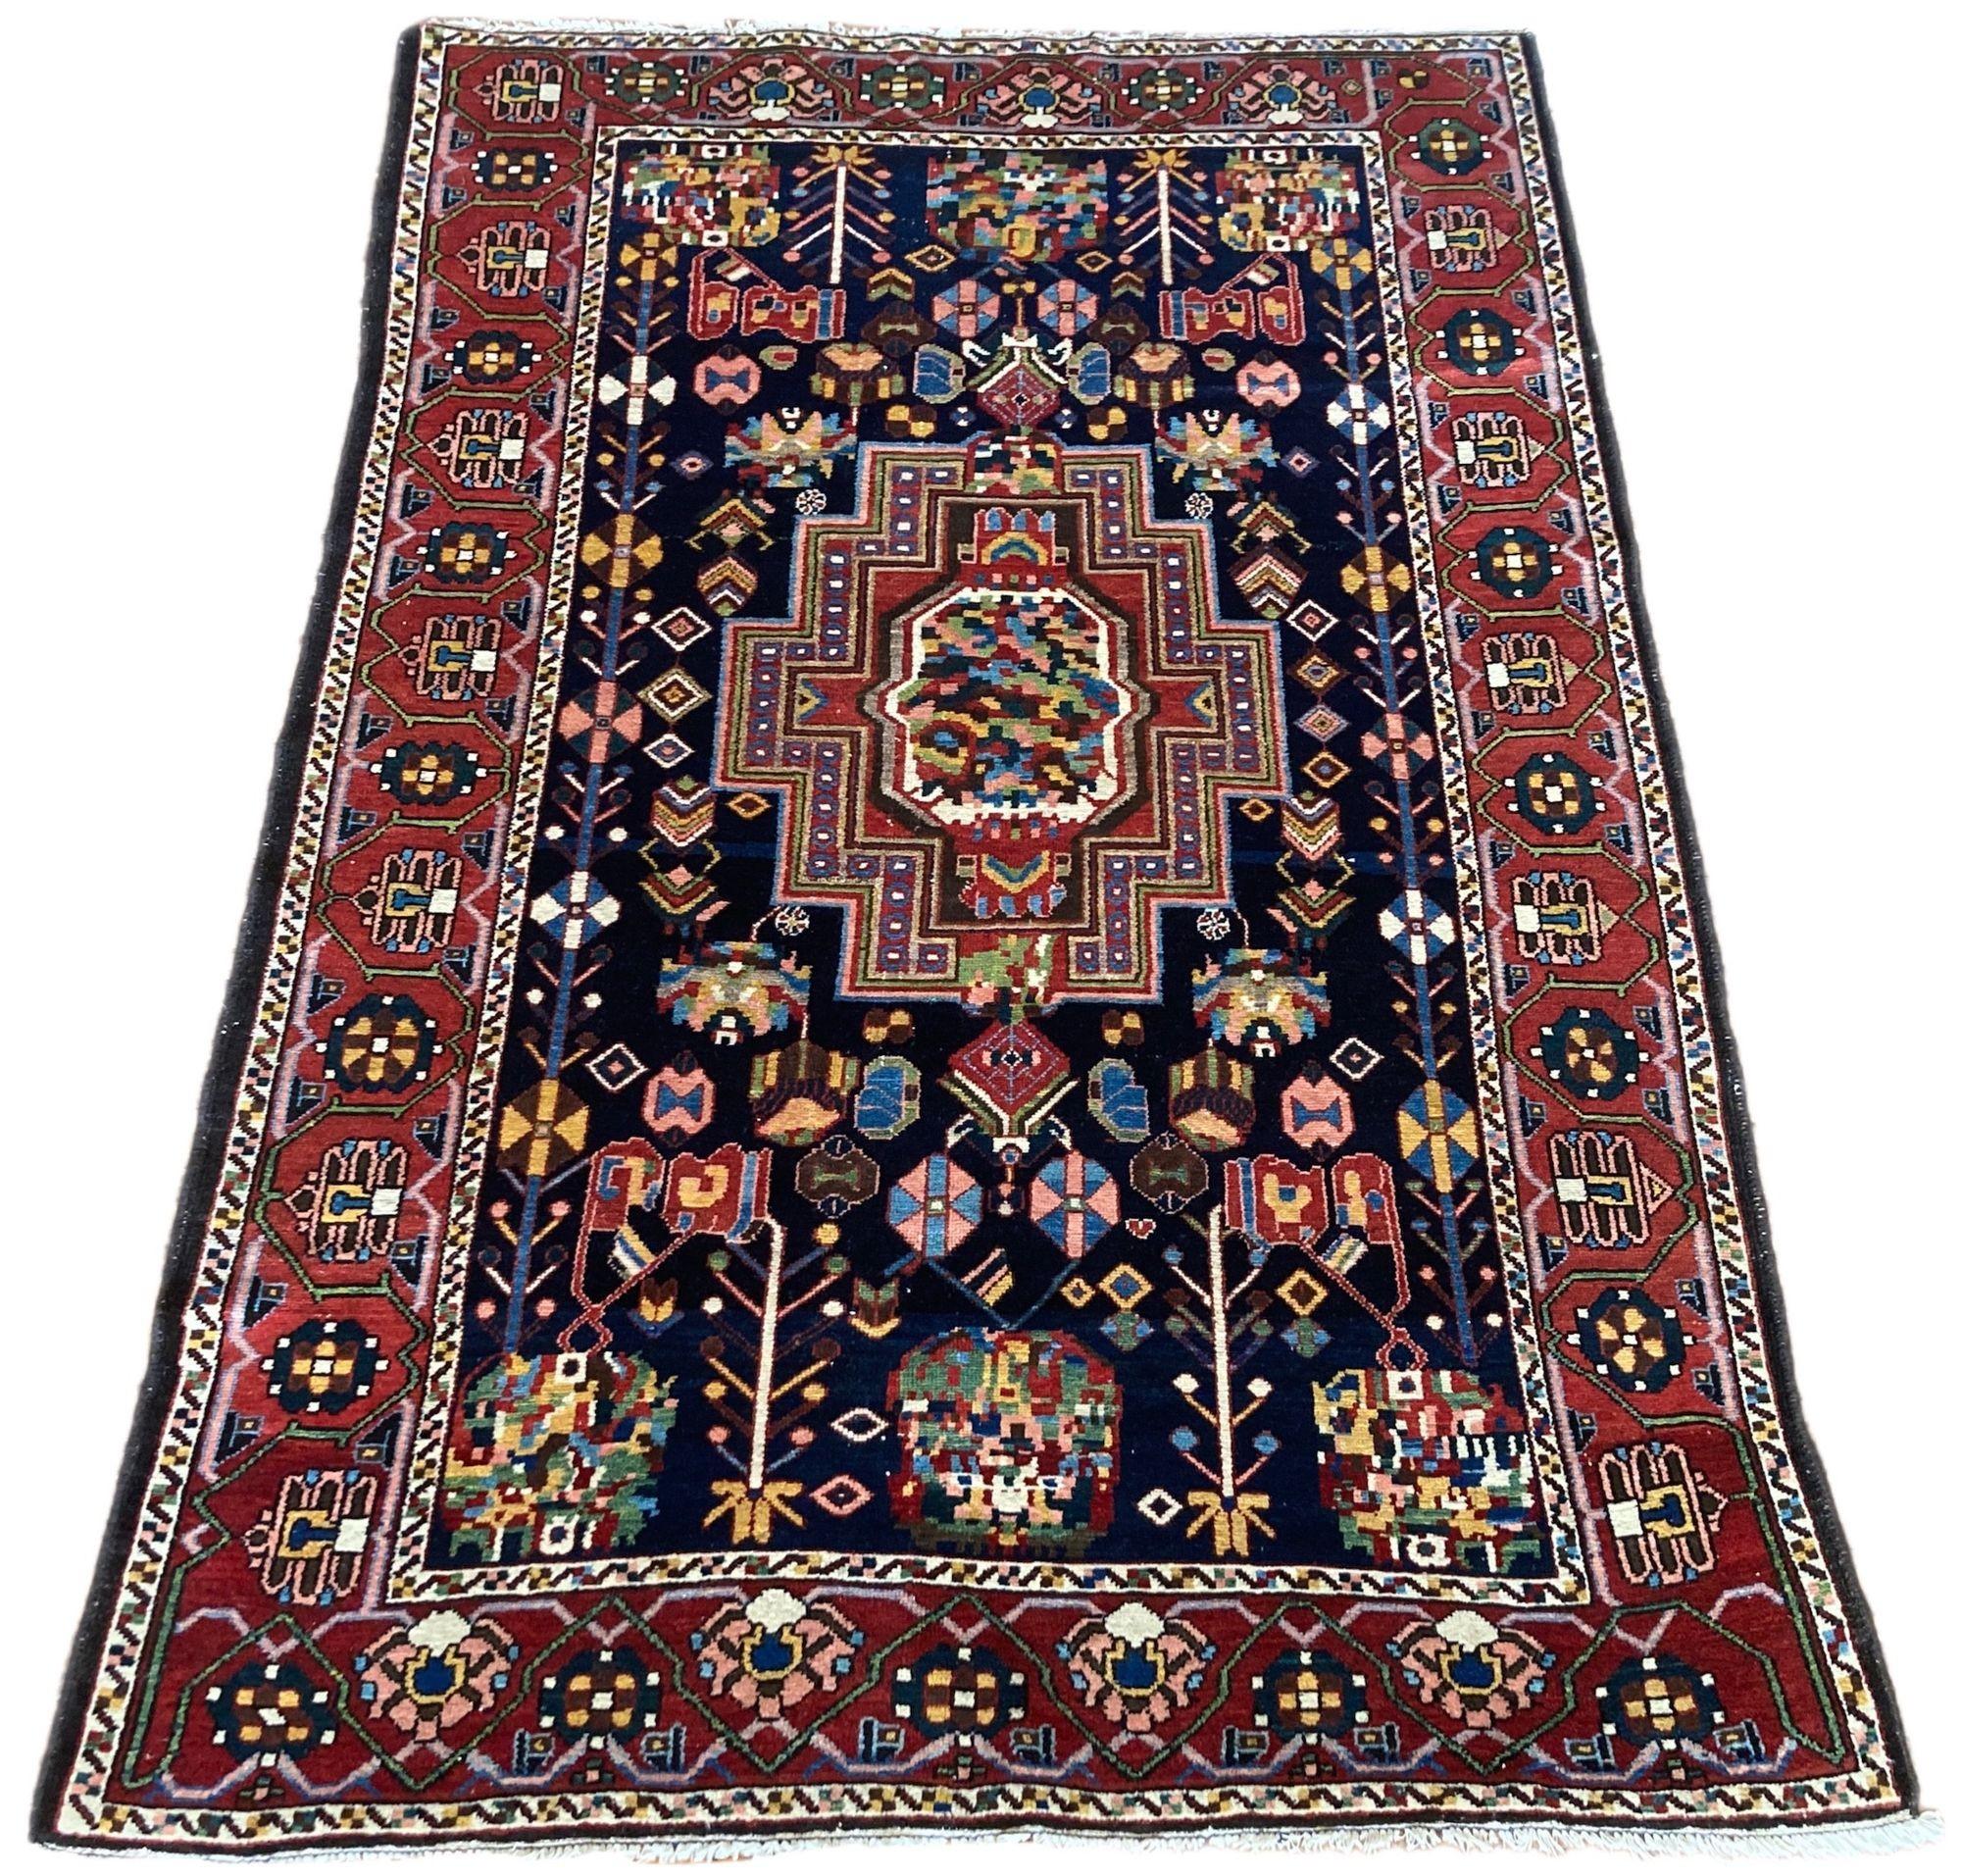 Ein wunderschöner antiker Bakhtiar-Teppich, handgewebt um 1910 mit einem floralen Medaillonmuster auf einem tief indigoblauen Feld und einer Terrakotta-Bordüre. Wunderschöne Sekundärfarben in Rosé, Grün und Gold und ein sehr dekorativer Teppich. Der